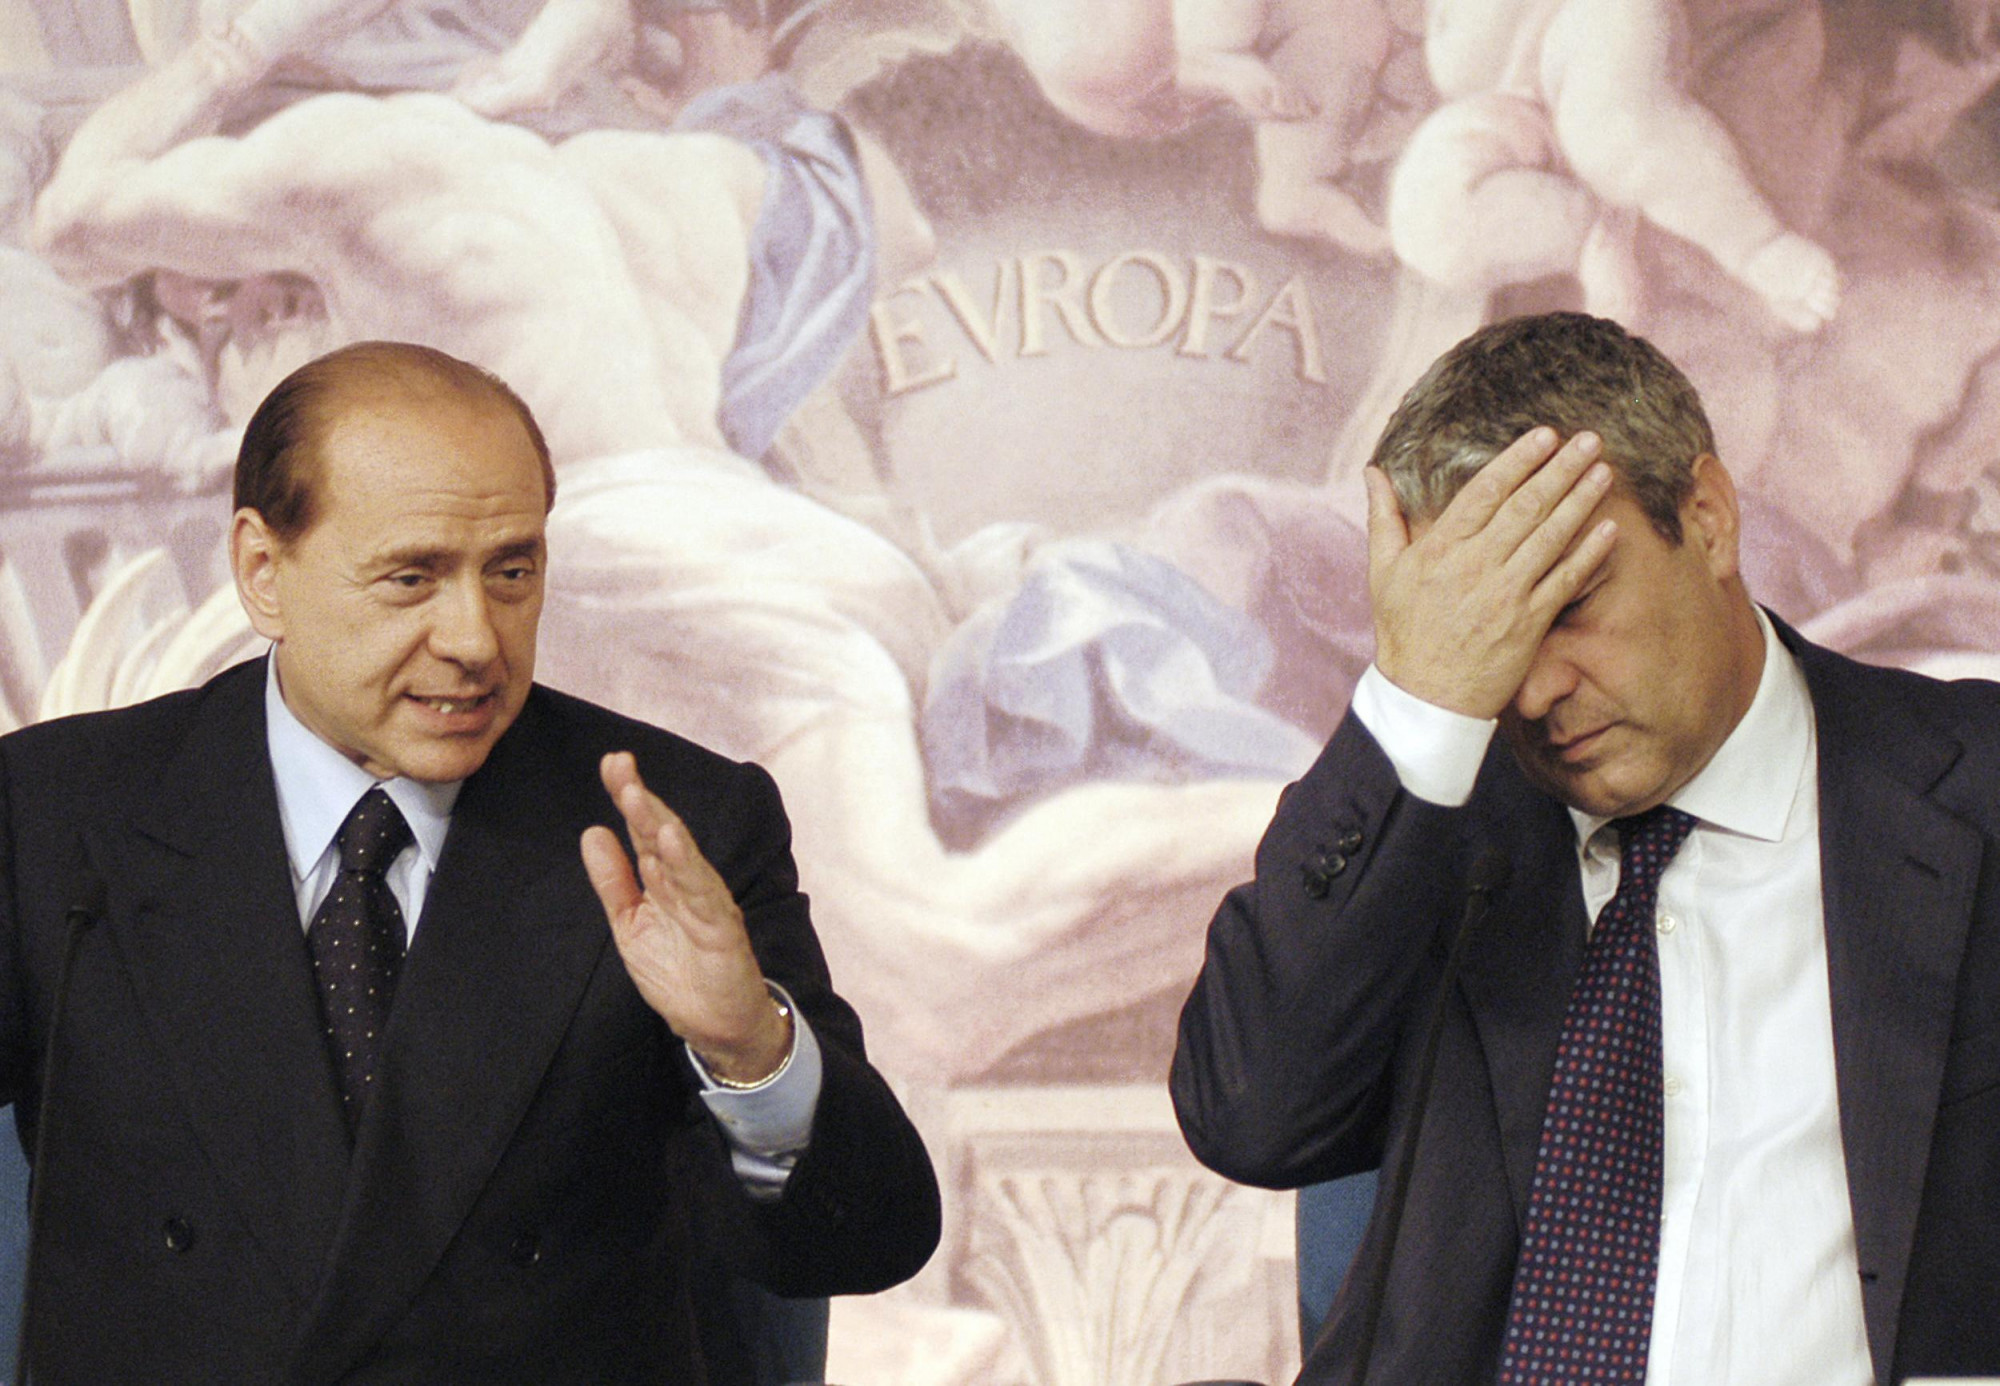 Több mint 20 ezer festmény maradt Berlusconi örököseire, de ennek nagy része bóvli